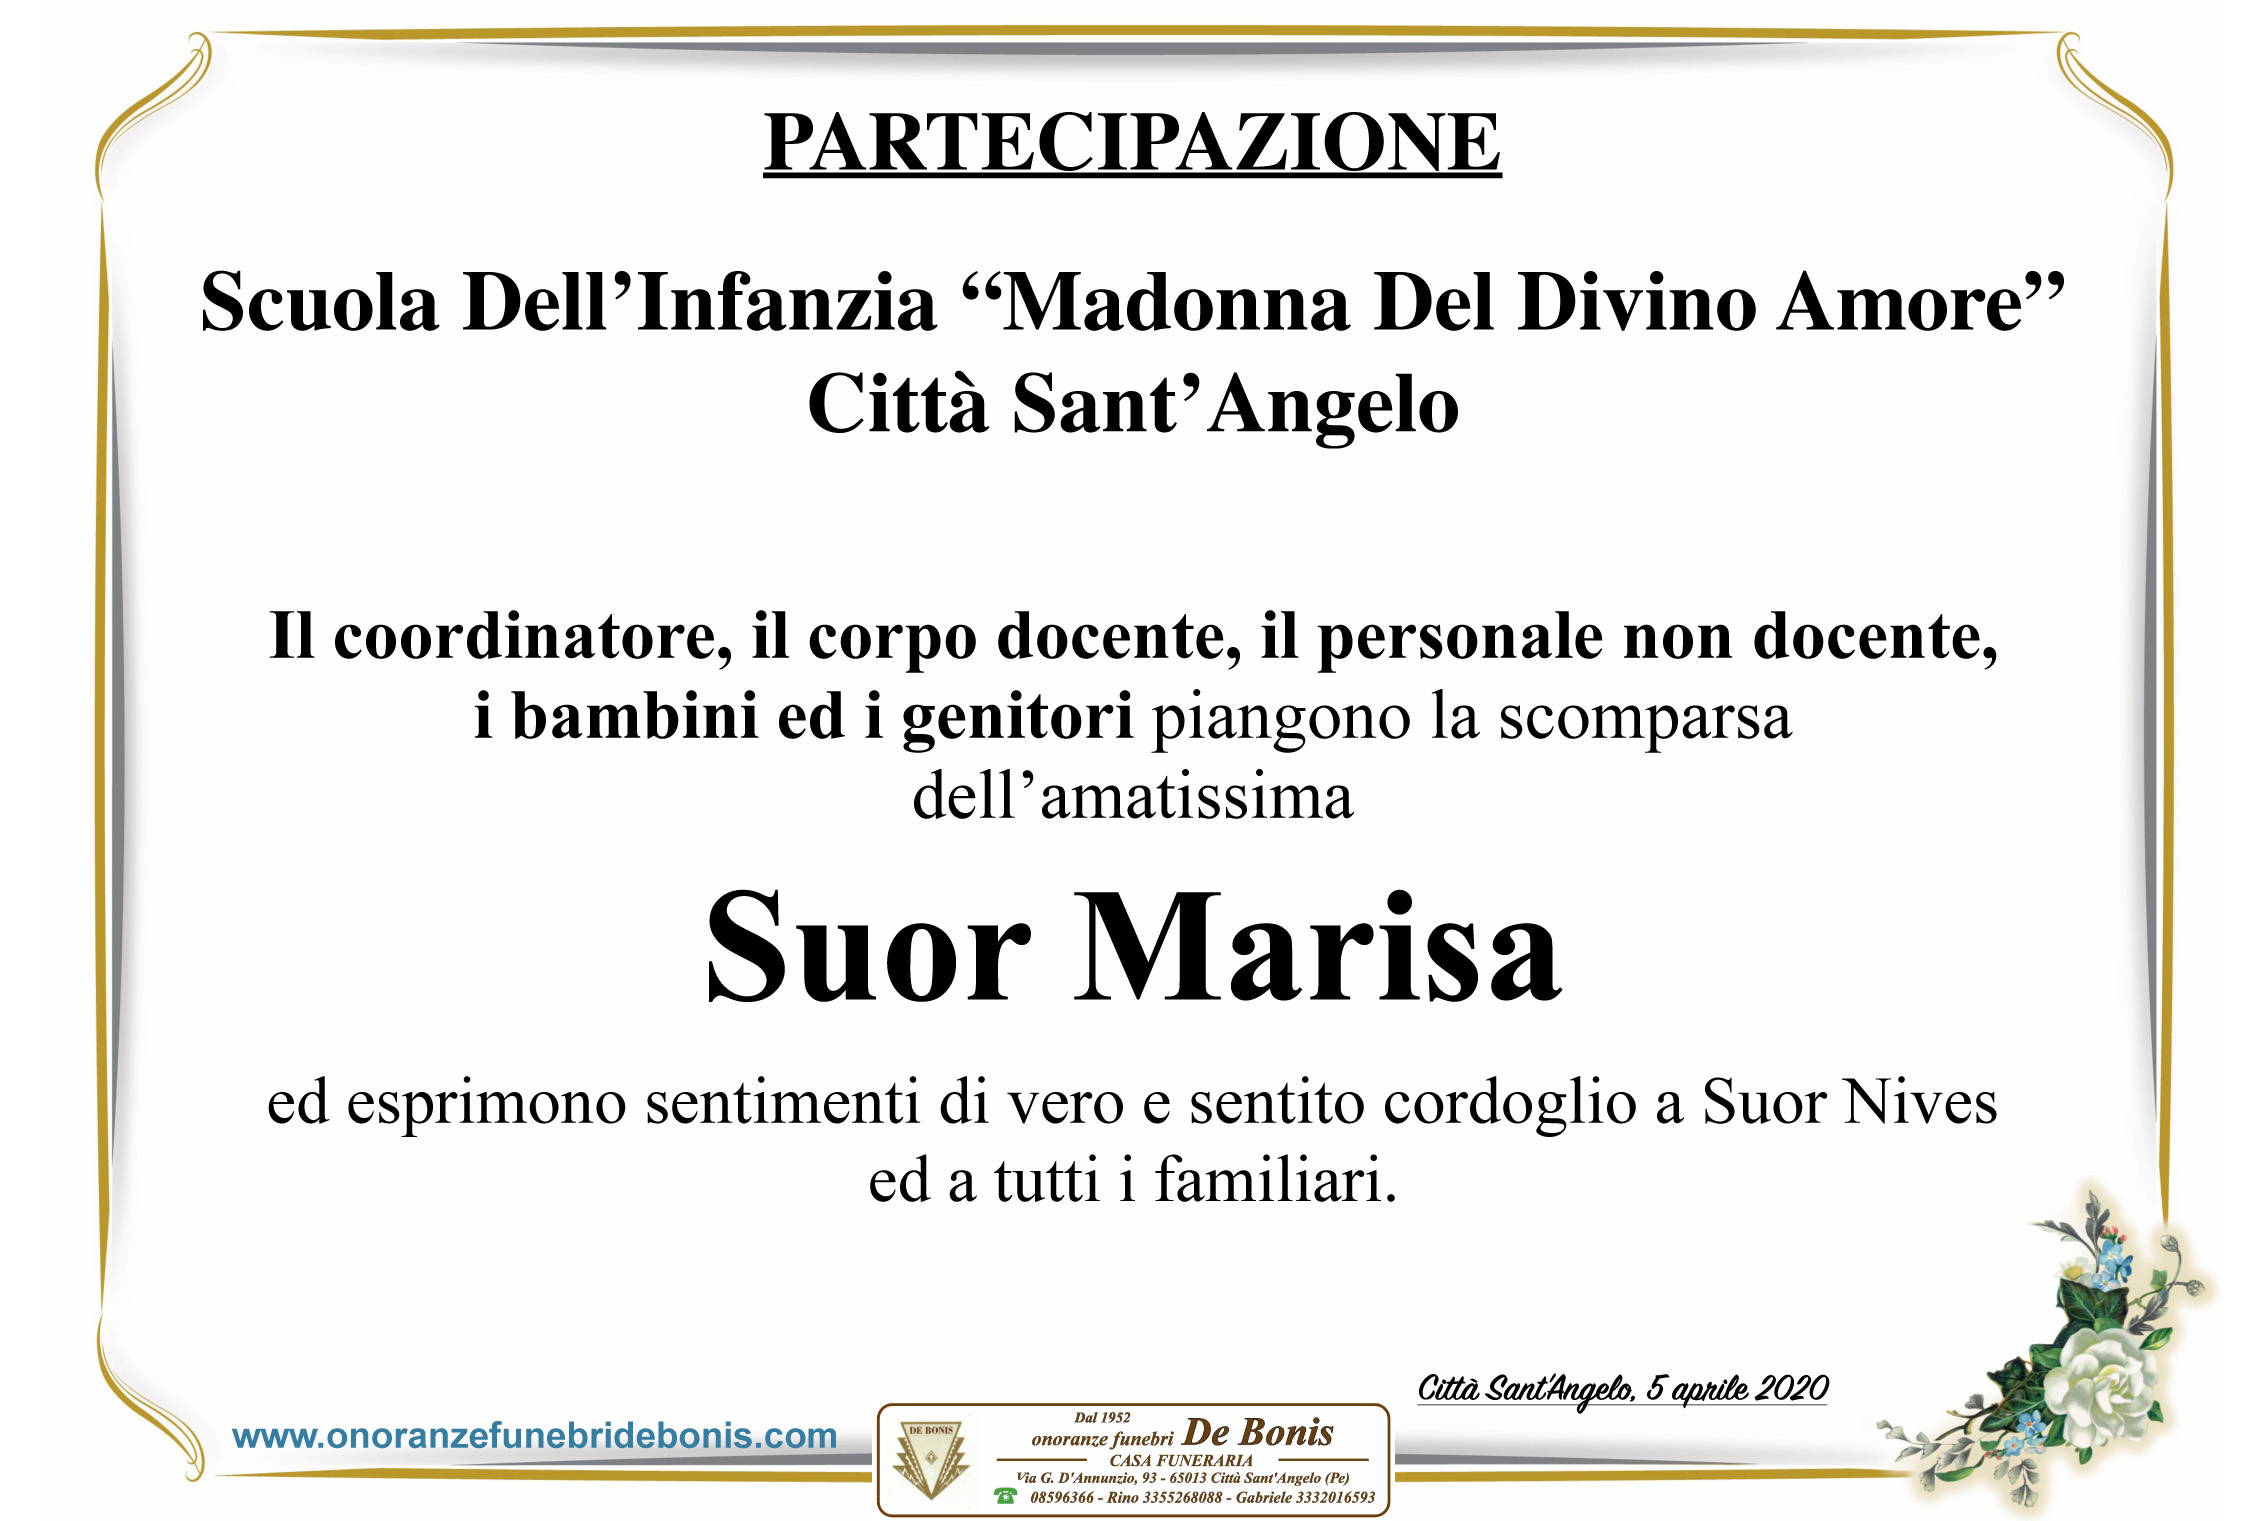 Scuola dell'Infanzia "Madonna del Divino Amore" - Città Sant'Angelo